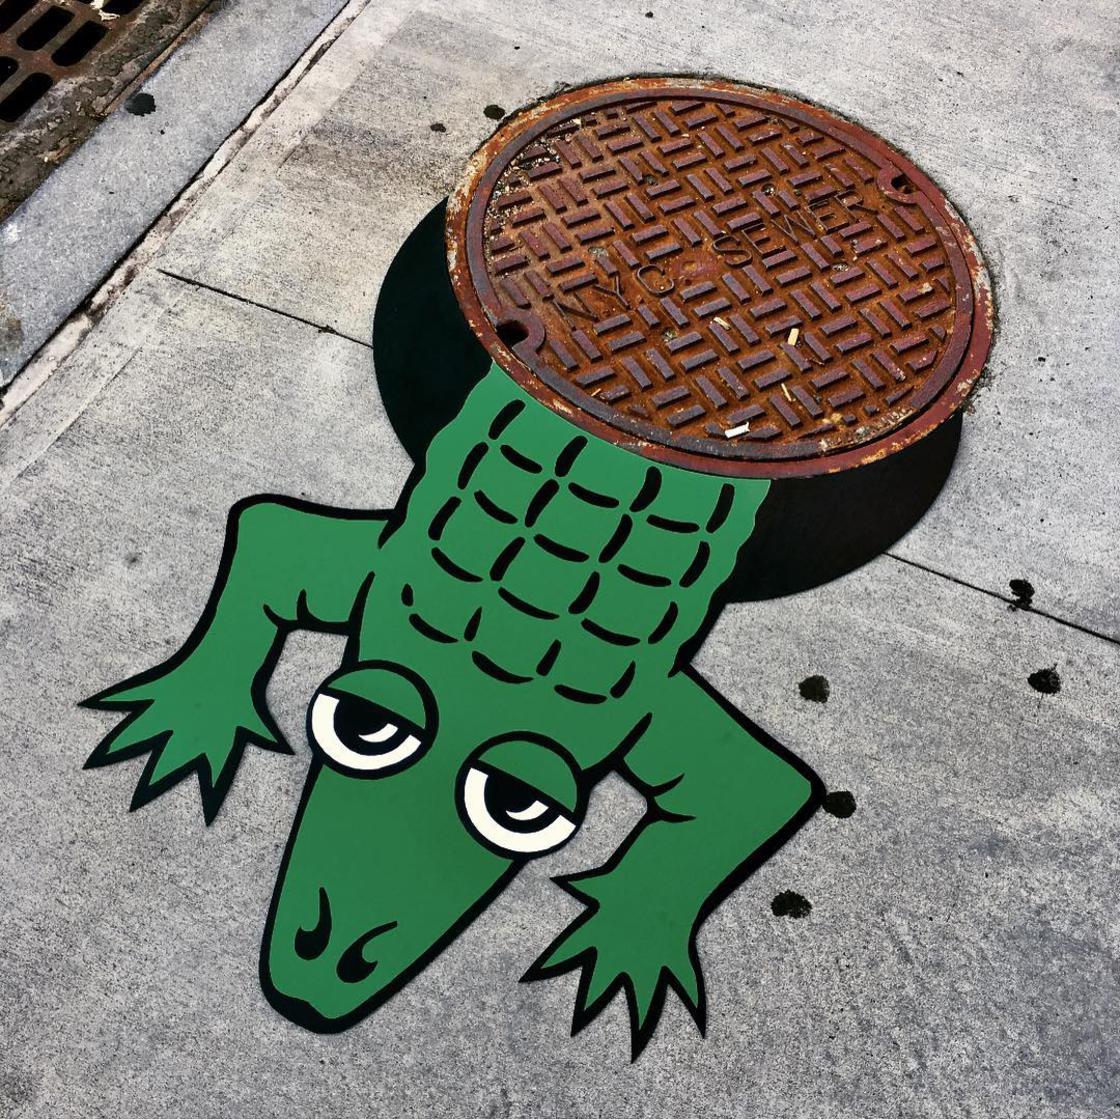 street art ideas crocodile